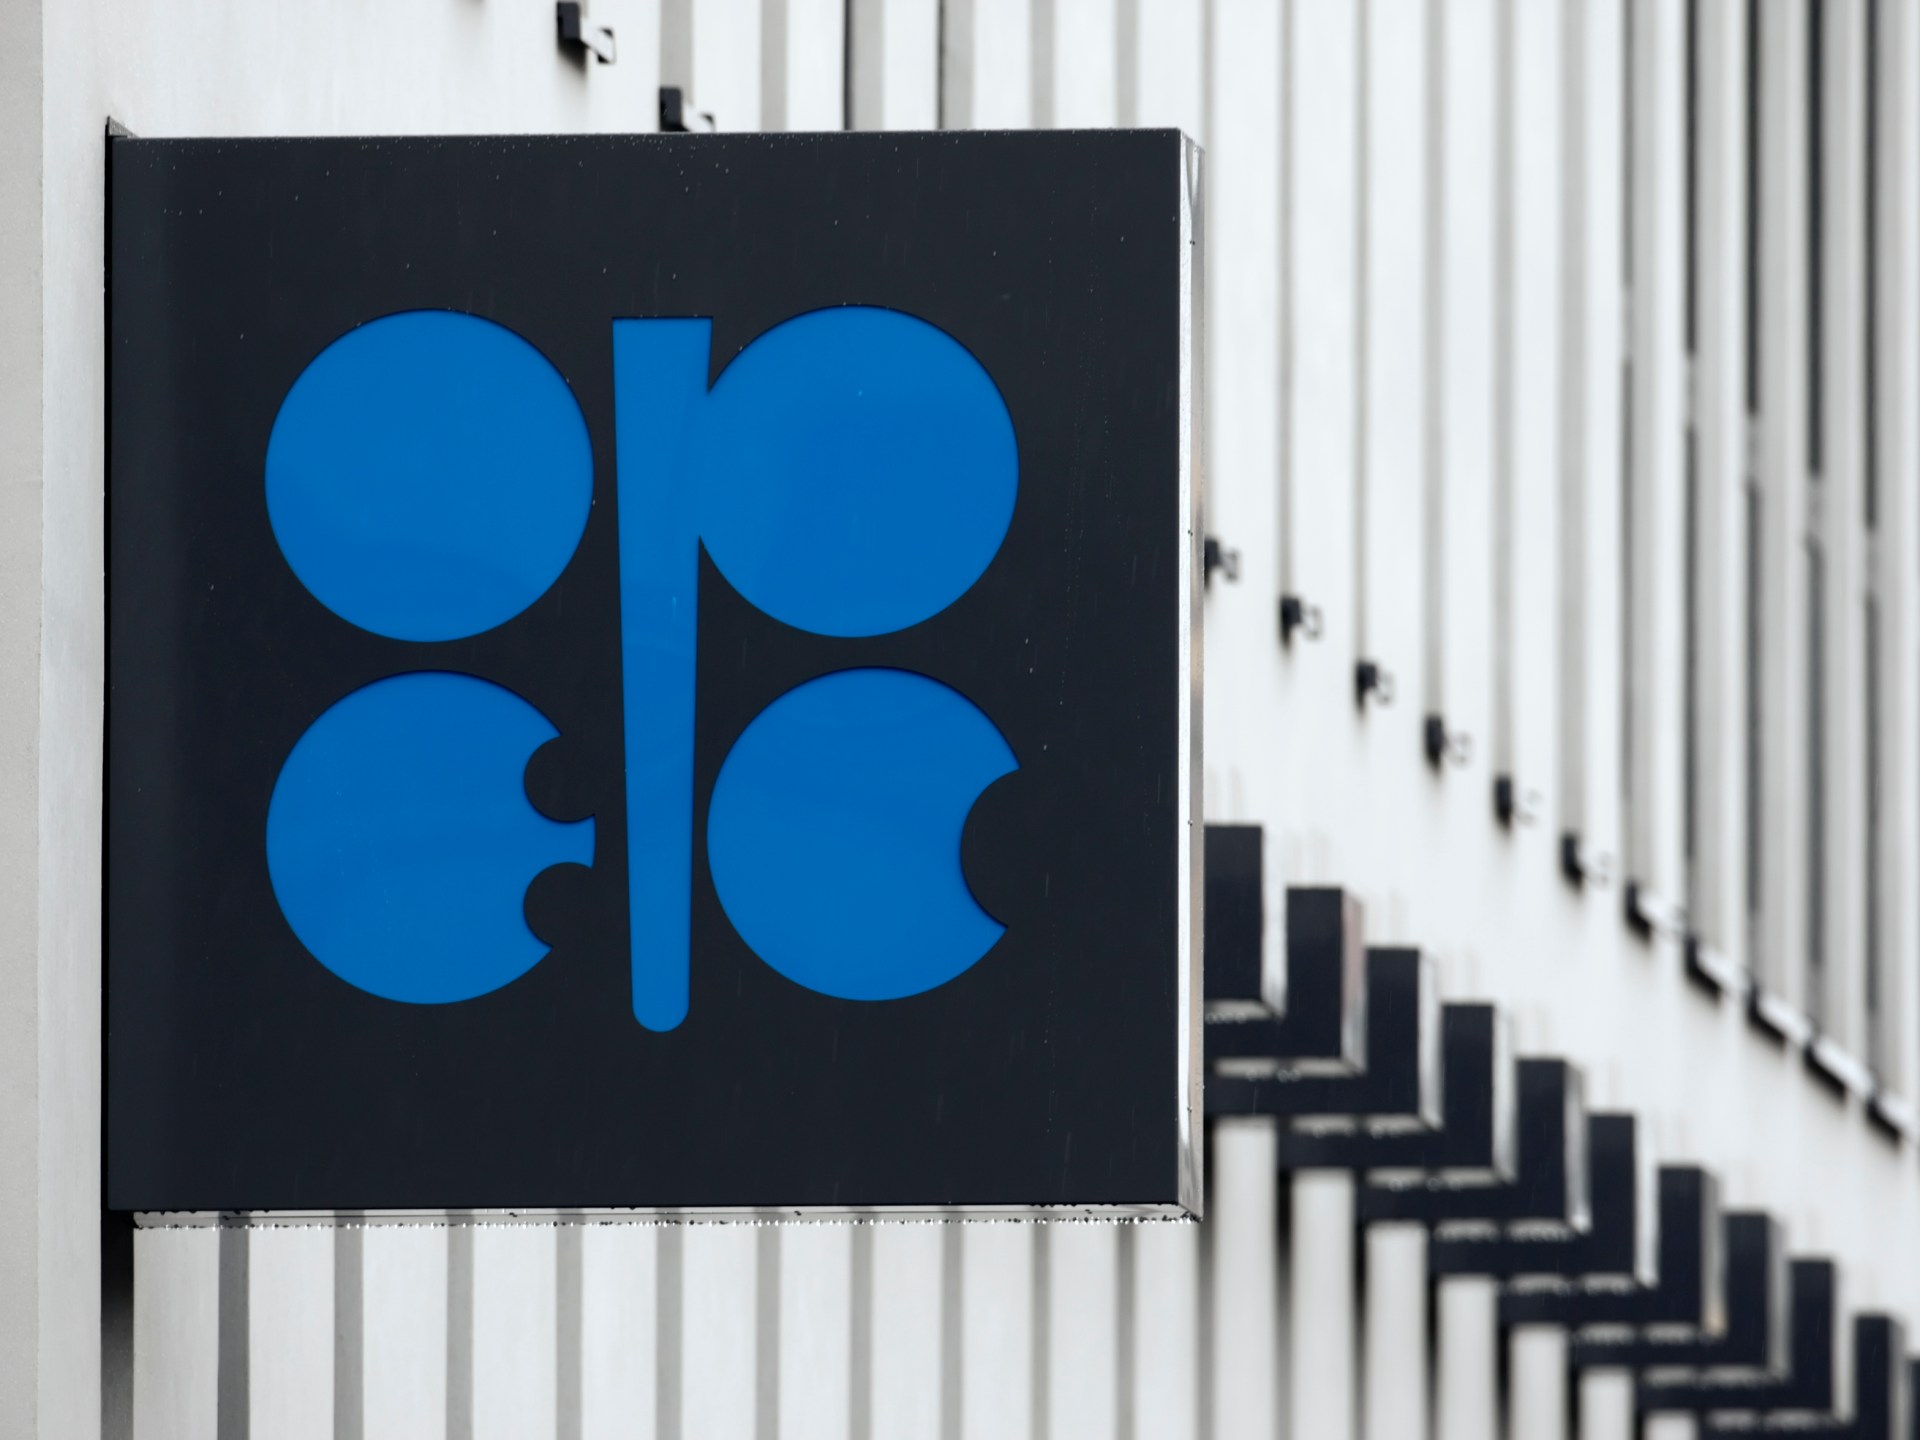 L’OPEP ne contrôle pas le prix du pétrole, selon le chef du cartel |  Nouvelles de l’OPEP